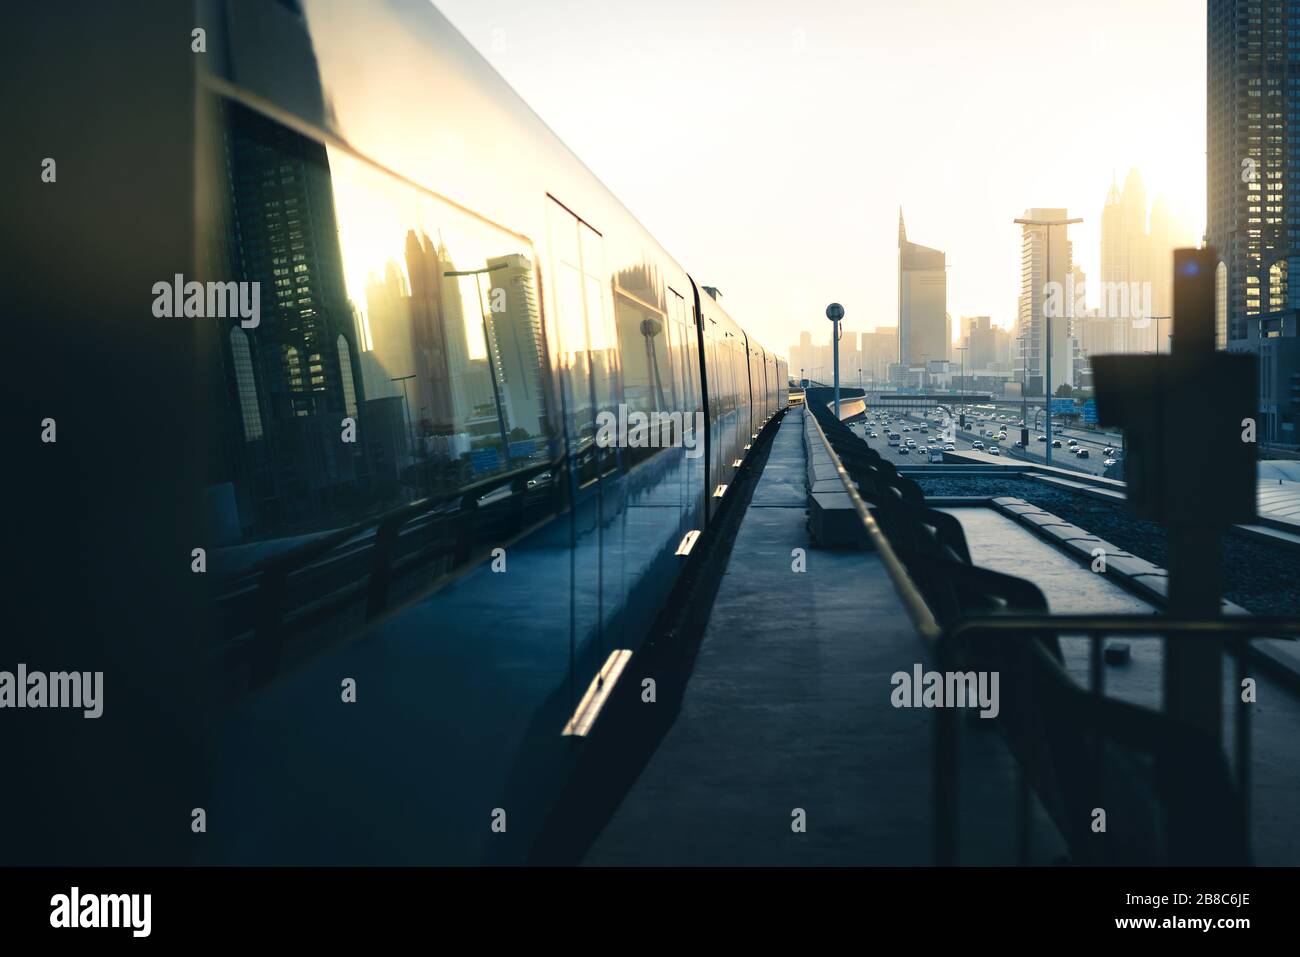 Métro et métro en ville. Les transports publics modernes et futuristes. Système ferroviaire de Dubaï au coucher du soleil avec gratte-ciel bâtiments et circulation de voiture. Banque D'Images